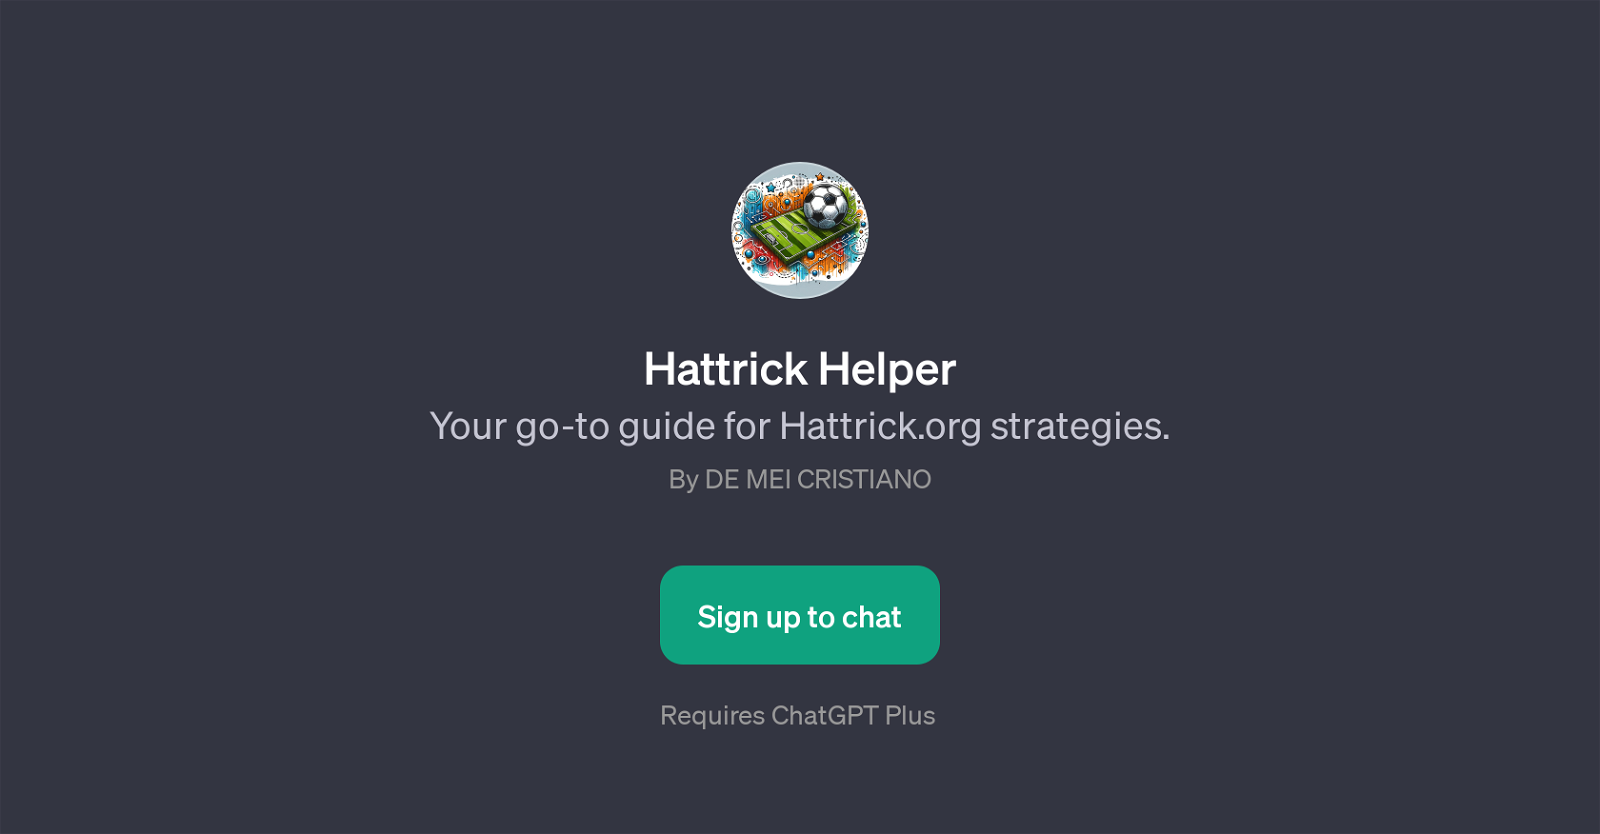 Hattrick Helper website